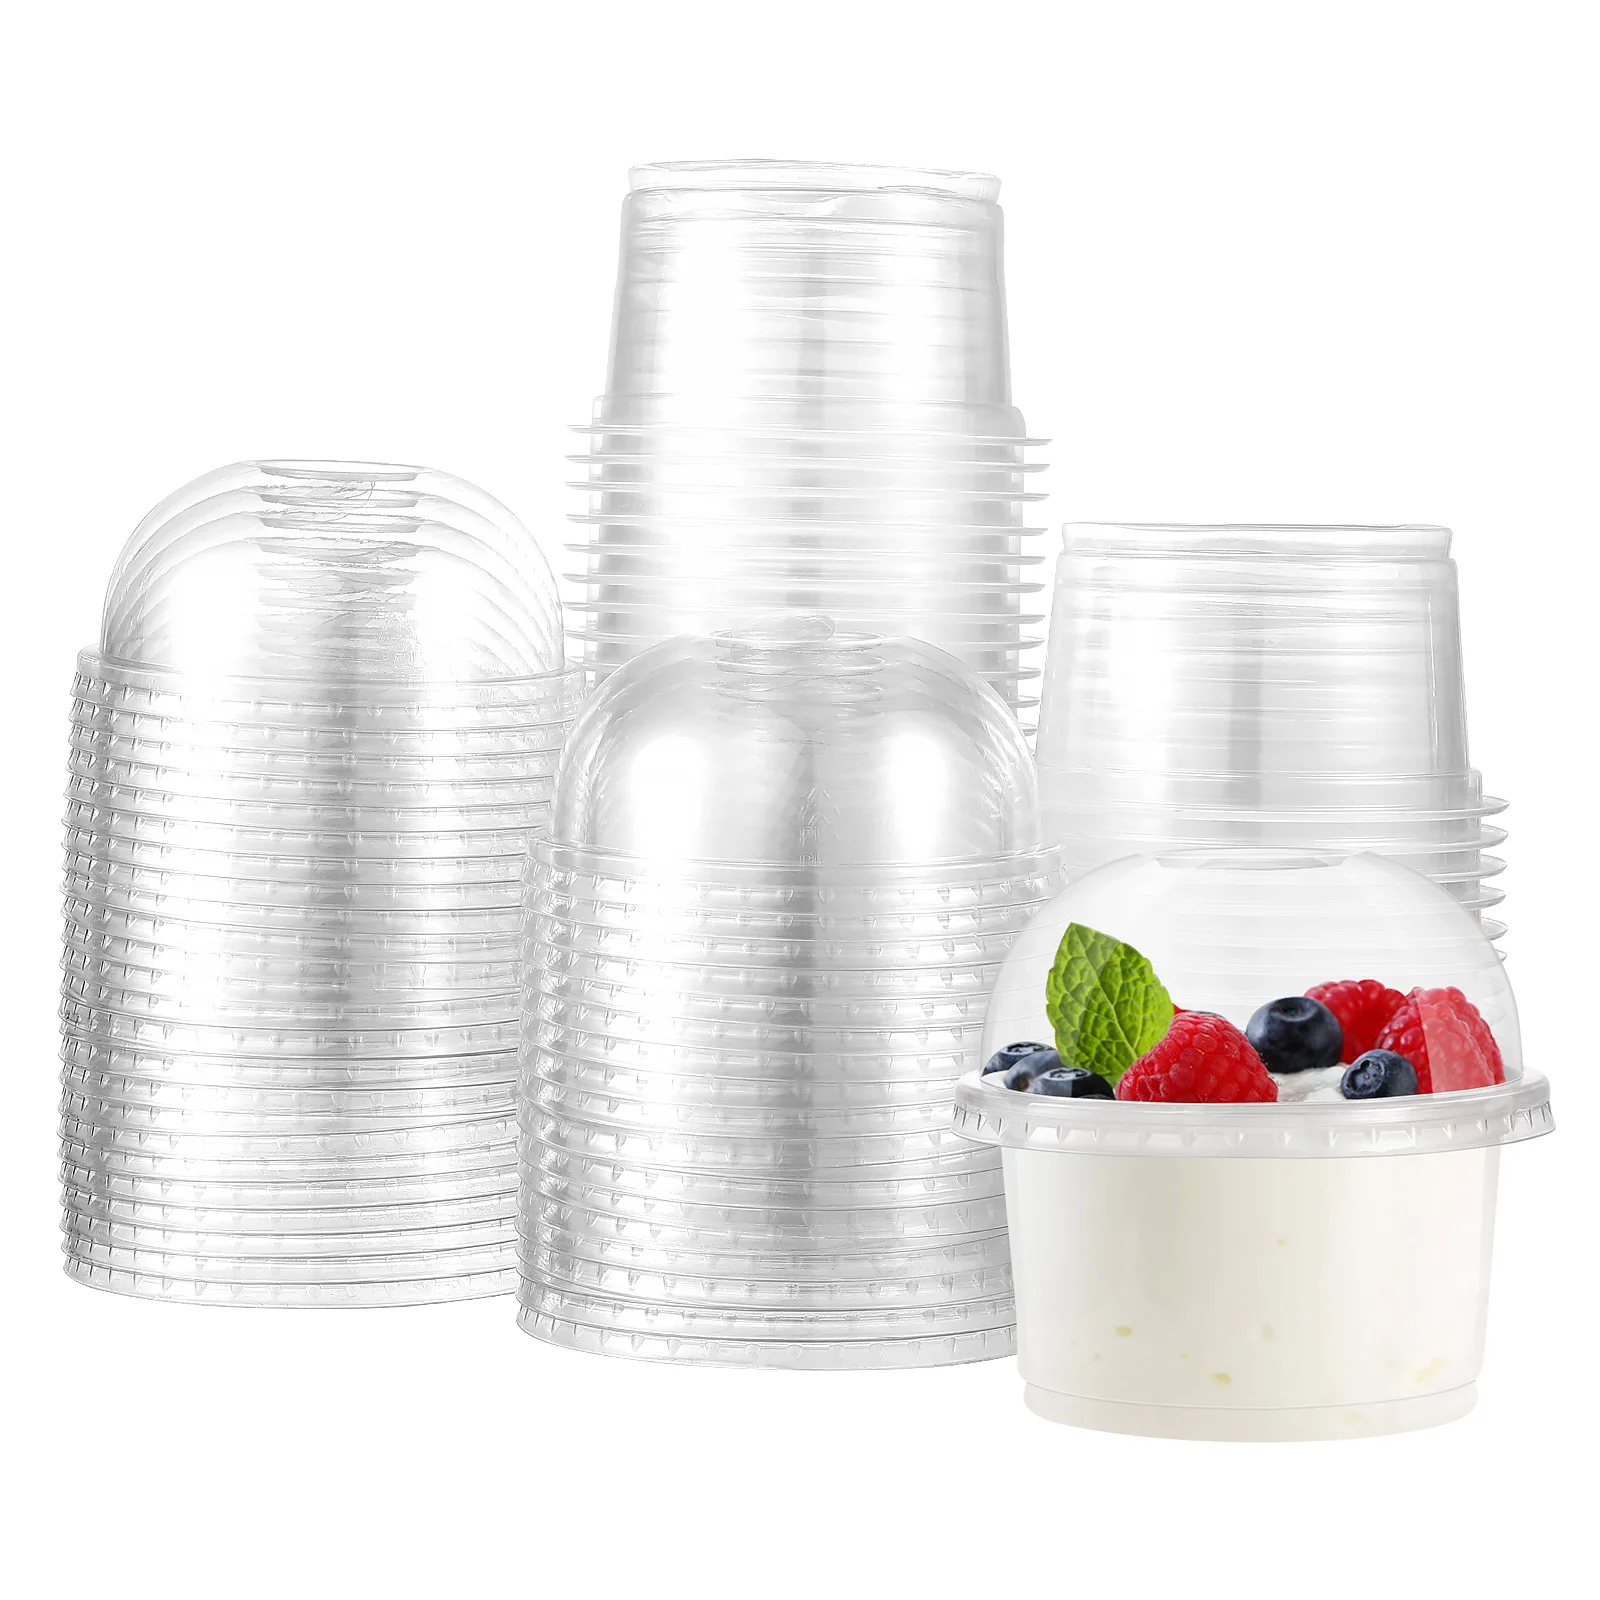 

50 шт., прозрачные чашки для десертов, фруктов, пластиковые идеальные чашки, одноразовые чашки для мороженого с крышками (250 мл)